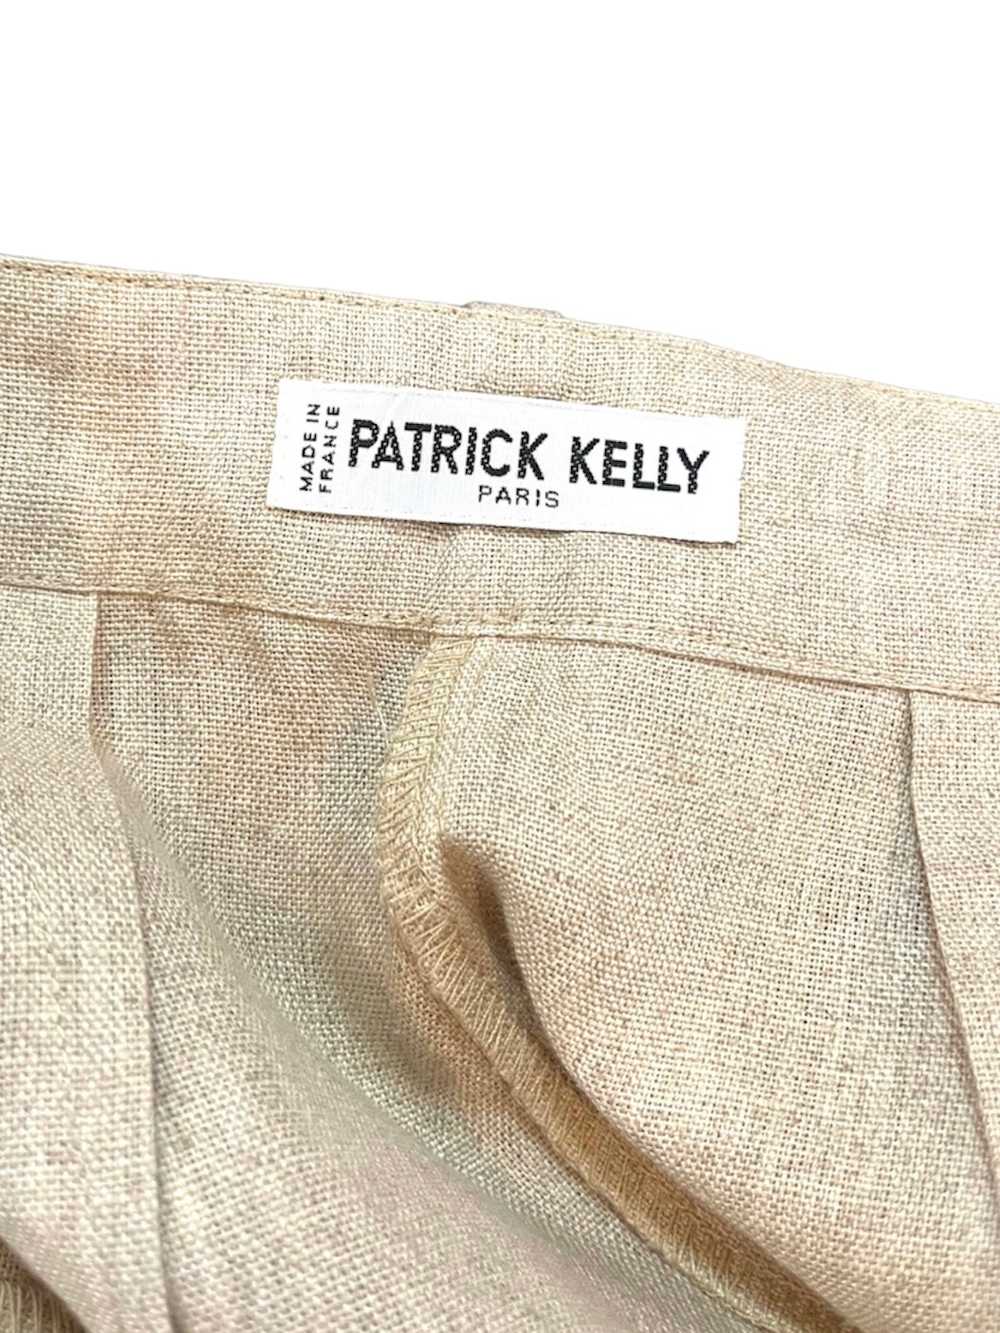 Patrick Kelly 80s Beige Linen Safari Suit - image 5